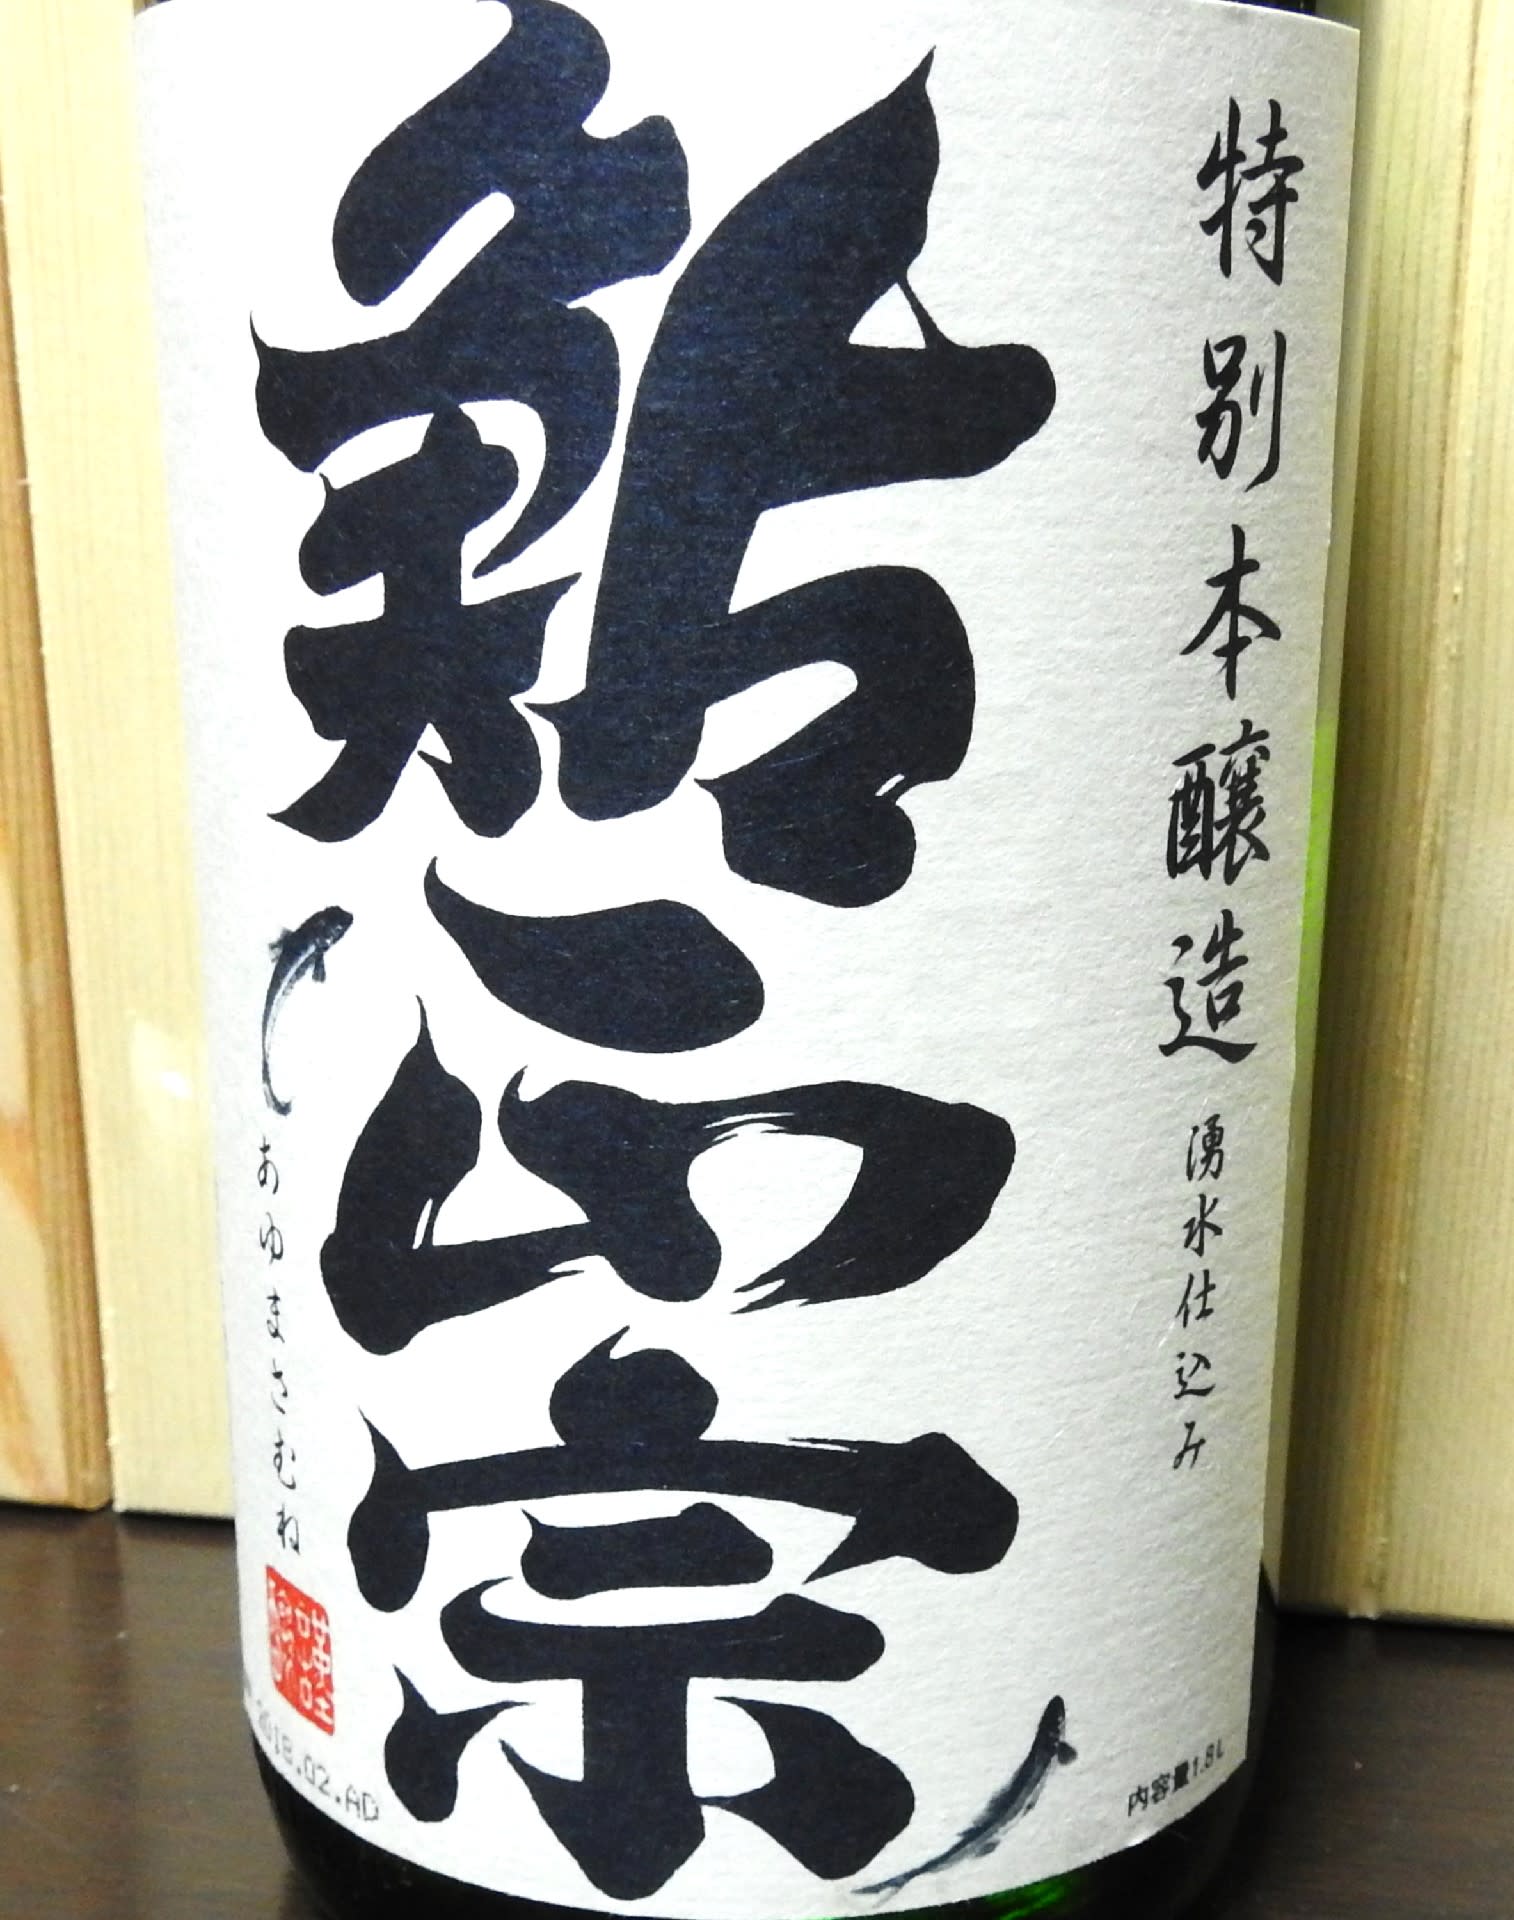 青木酒造 鶴齢 本醸造 新潟県妙高市 - 鳥とパイプと日本酒のおっさんメモ